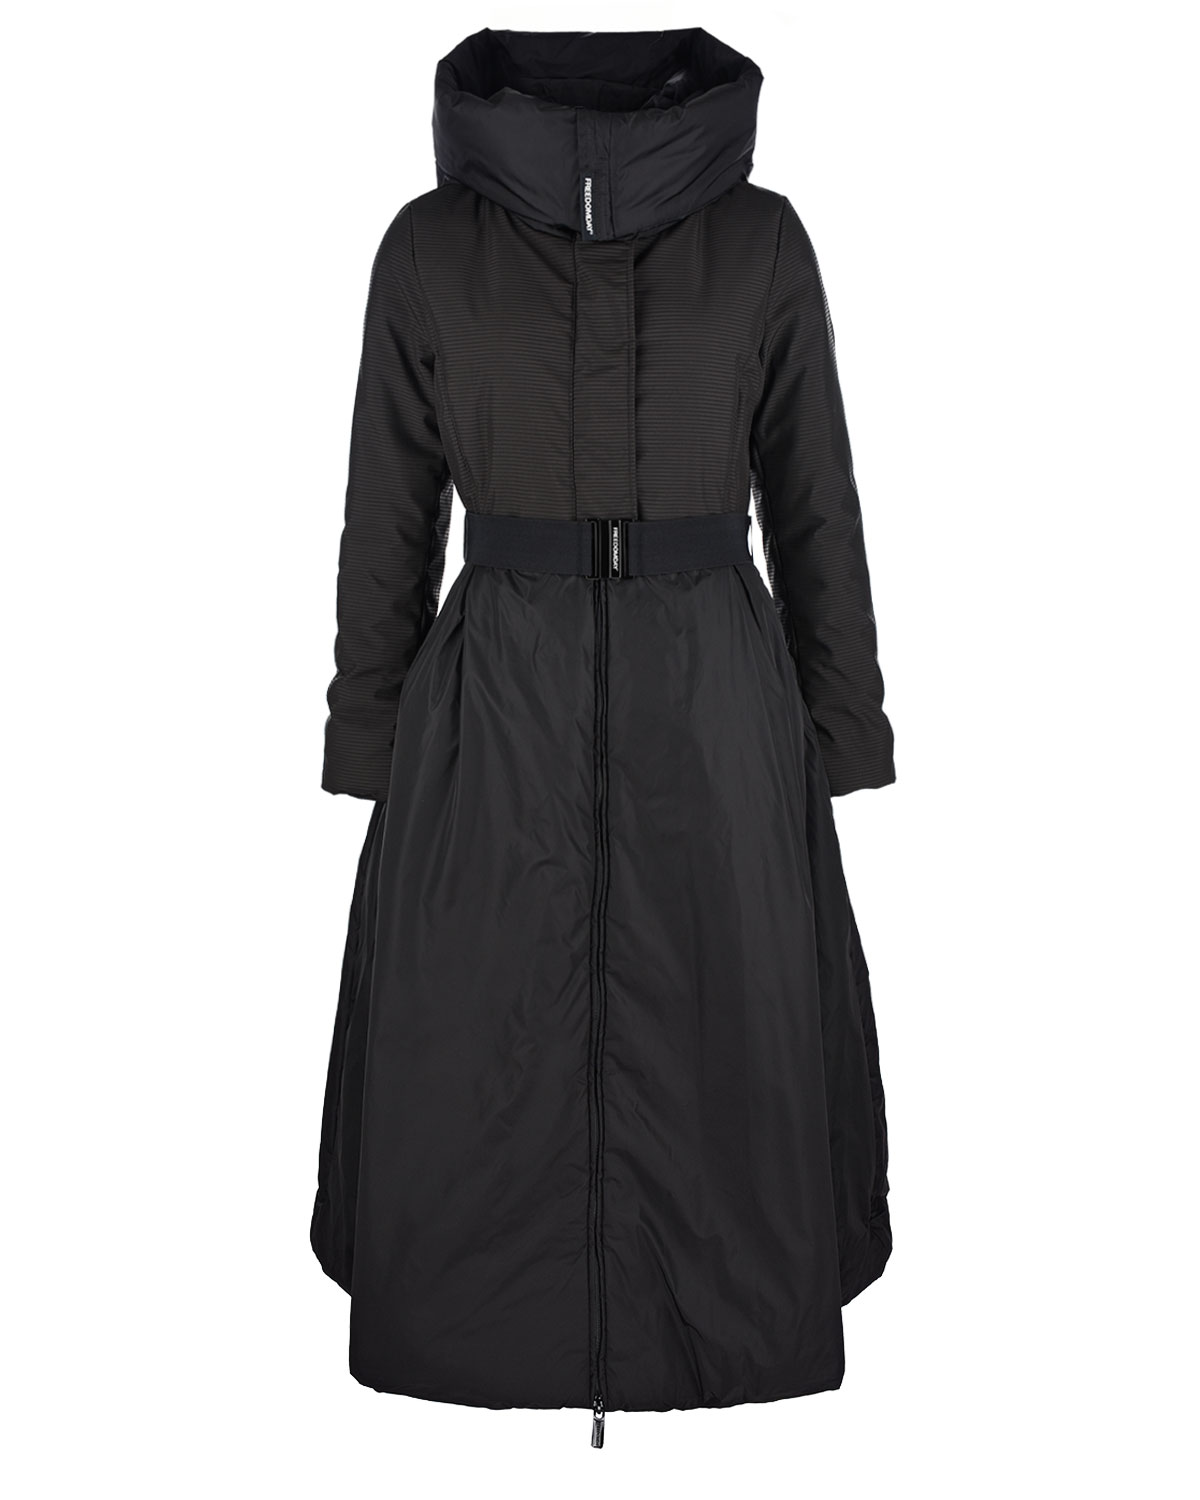 Приталенное черное пальто Freedomday, размер 40, цвет черный - фото 1